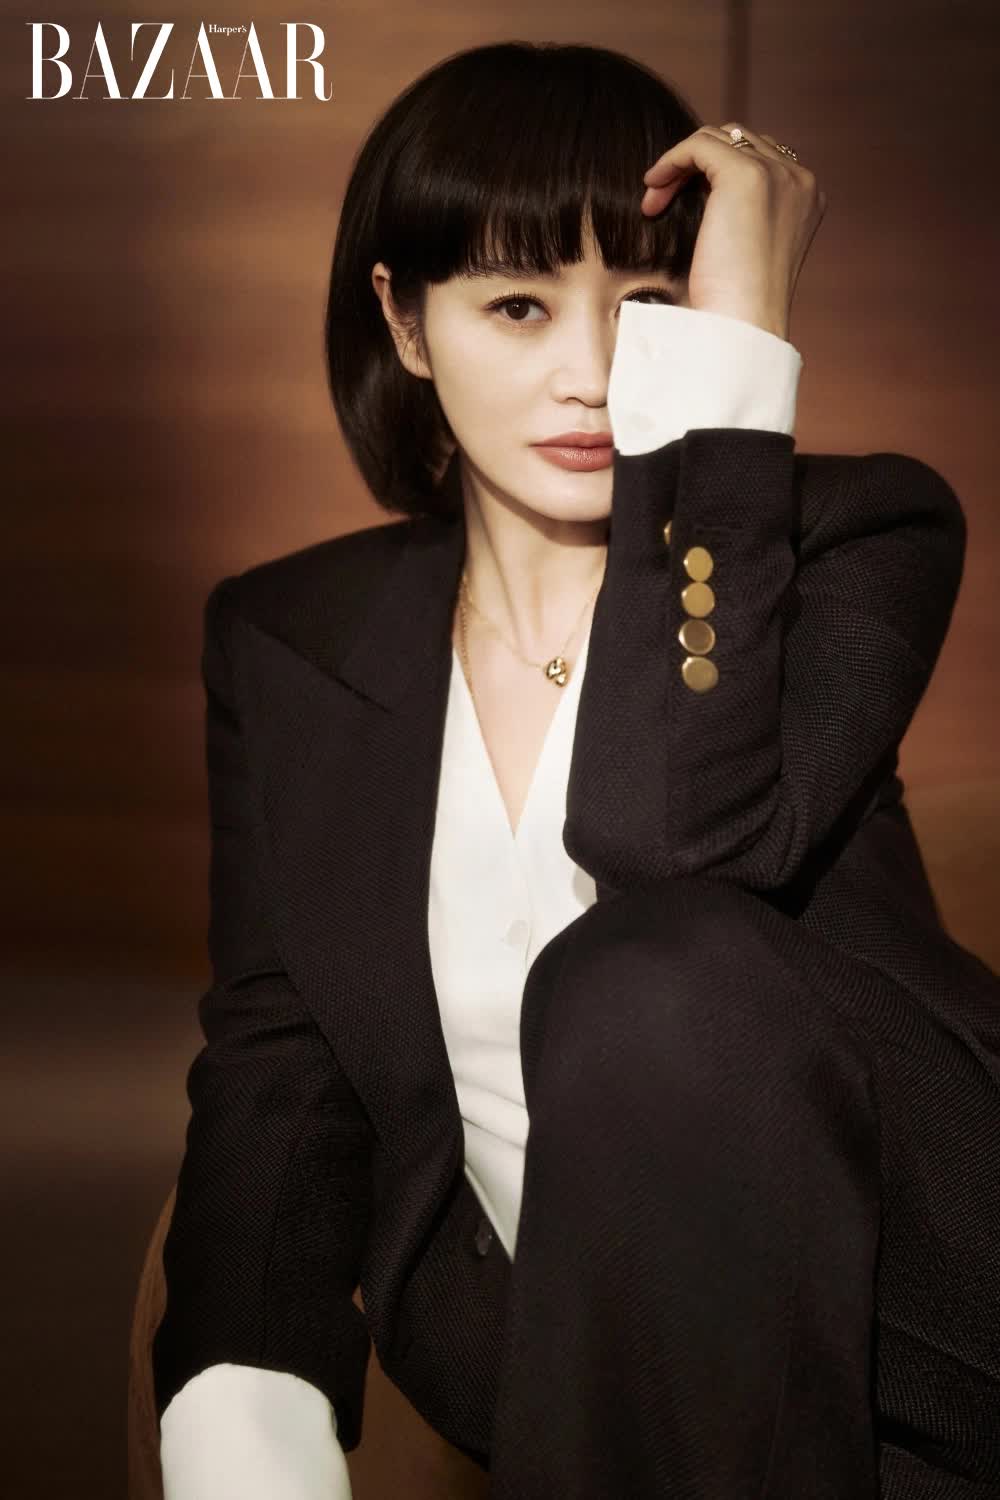 Sao Hàn bị liên lụy khi người thân vướng vào bê bối: ''Chị đại'' Kim Hye Soo ''gánh còng lưng'' nợ nần của mẹ, Han Hyo Joo bị ghẻ lạnh vì em trai gây rắc rối - ảnh 2